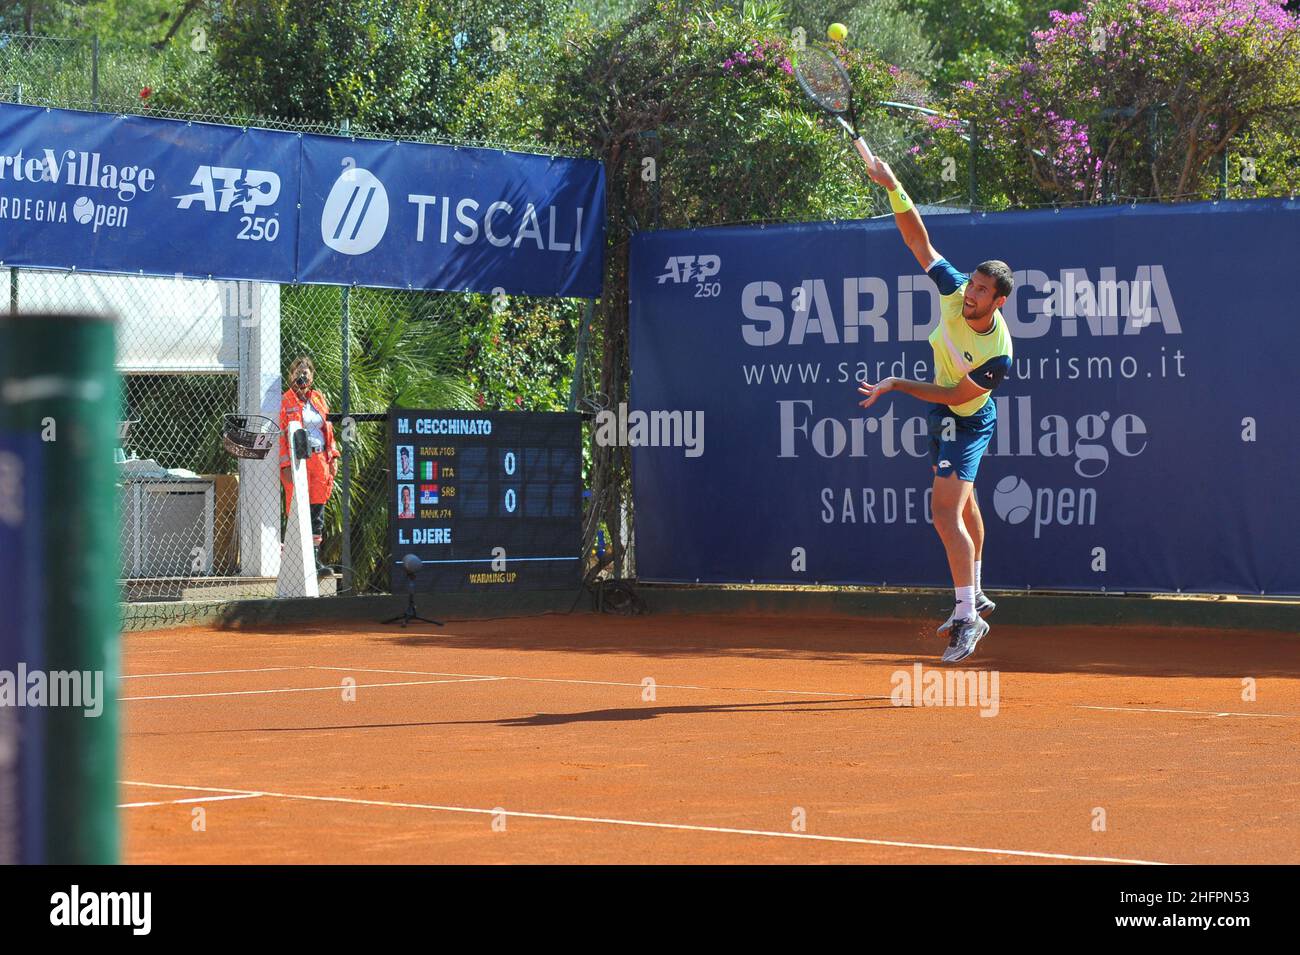 Alessandro Tocco/LaPresse October 18, 2020 Santa Margherita di Pula,  Cagliari (Italy) Sport Tennis Tennis, Forte Village Sardegna Open In the  pic Stock Photo - Alamy